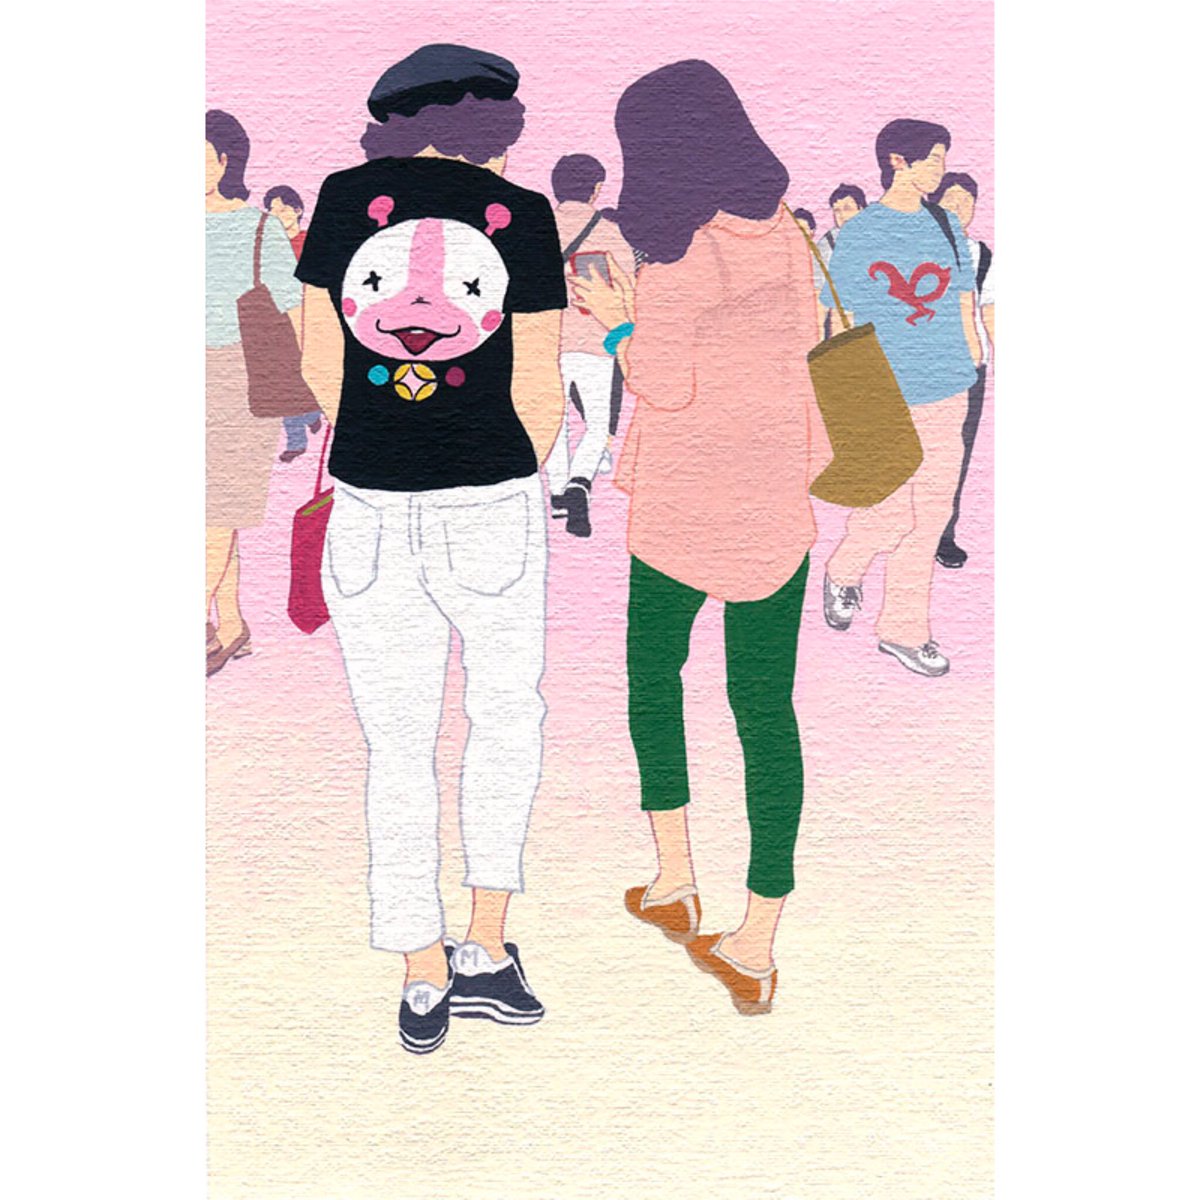 「あんなワクワクしたアニメはなかったなぁ、と思いながら描きました。」|前田なんとかのイラスト